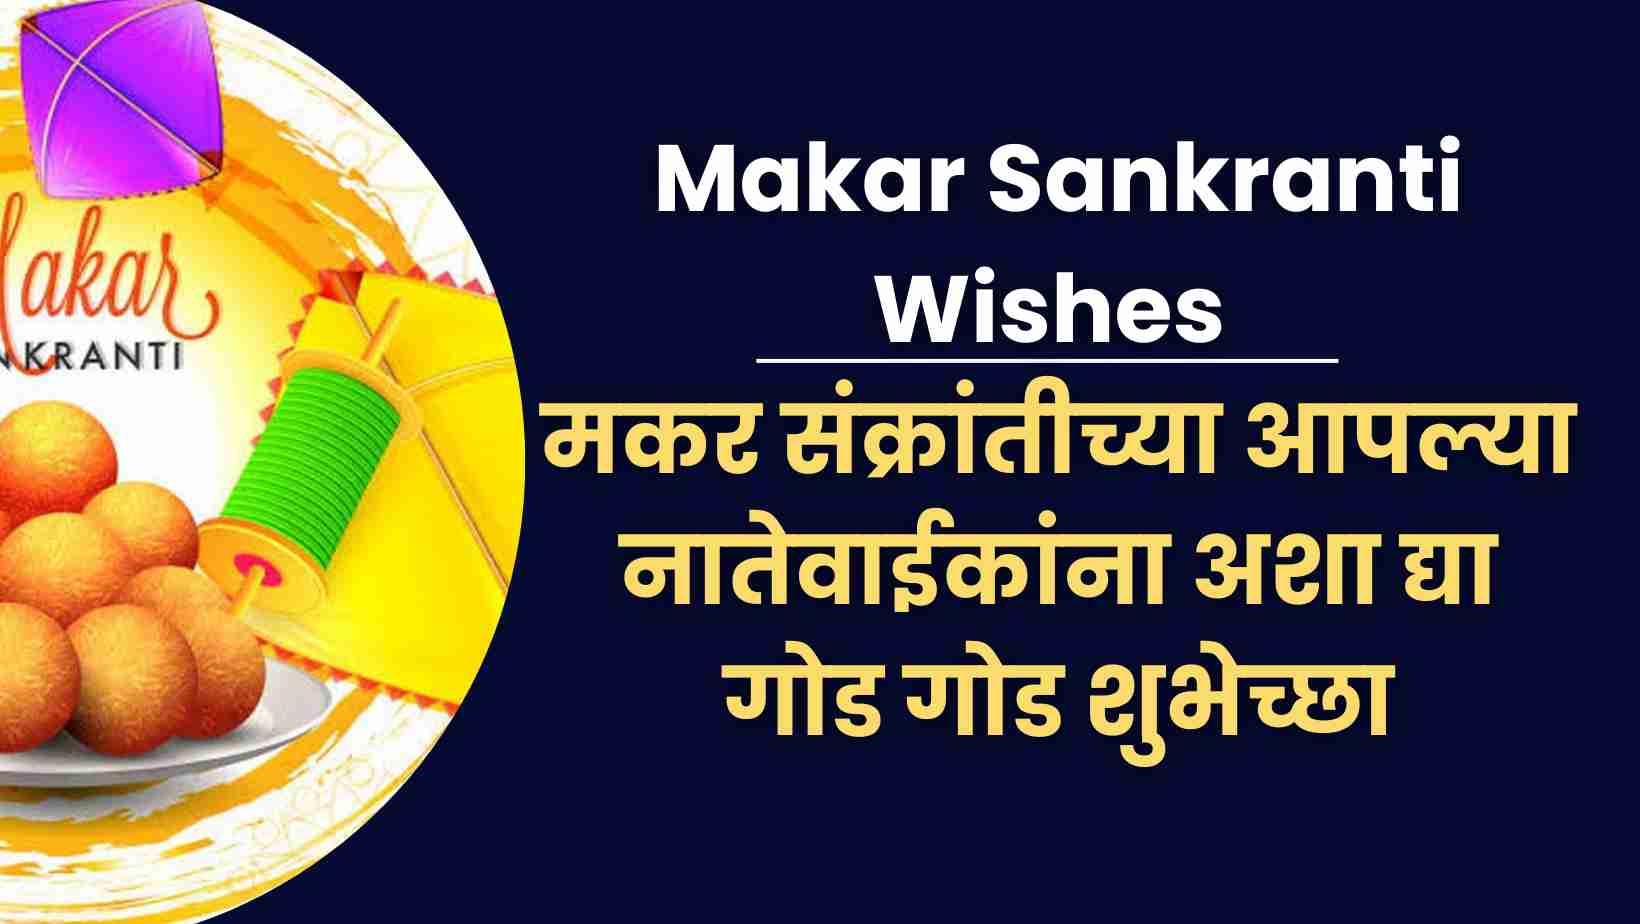 Makar Sankranti Wishes मकर संक्रांतीच्या आपल्या नातेवाईकांना अशा द्या गोड गोड शुभेच्छा